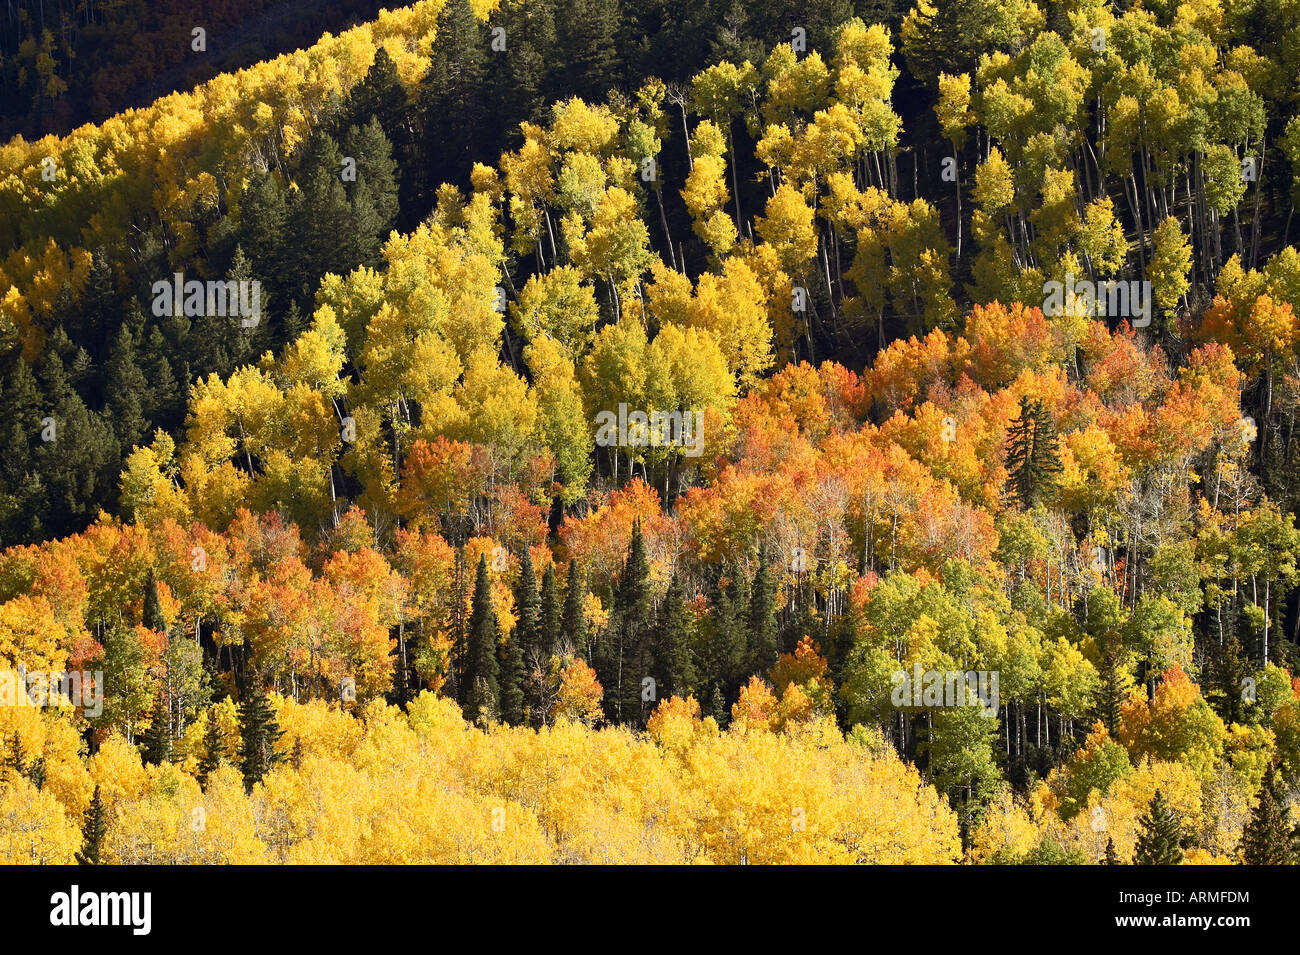 Herbst-Farbmuster mit Espen und Evergreens, in der Nähe von Ouray, Colorado, Vereinigte Staaten von Amerika, Nordamerika Stockfoto